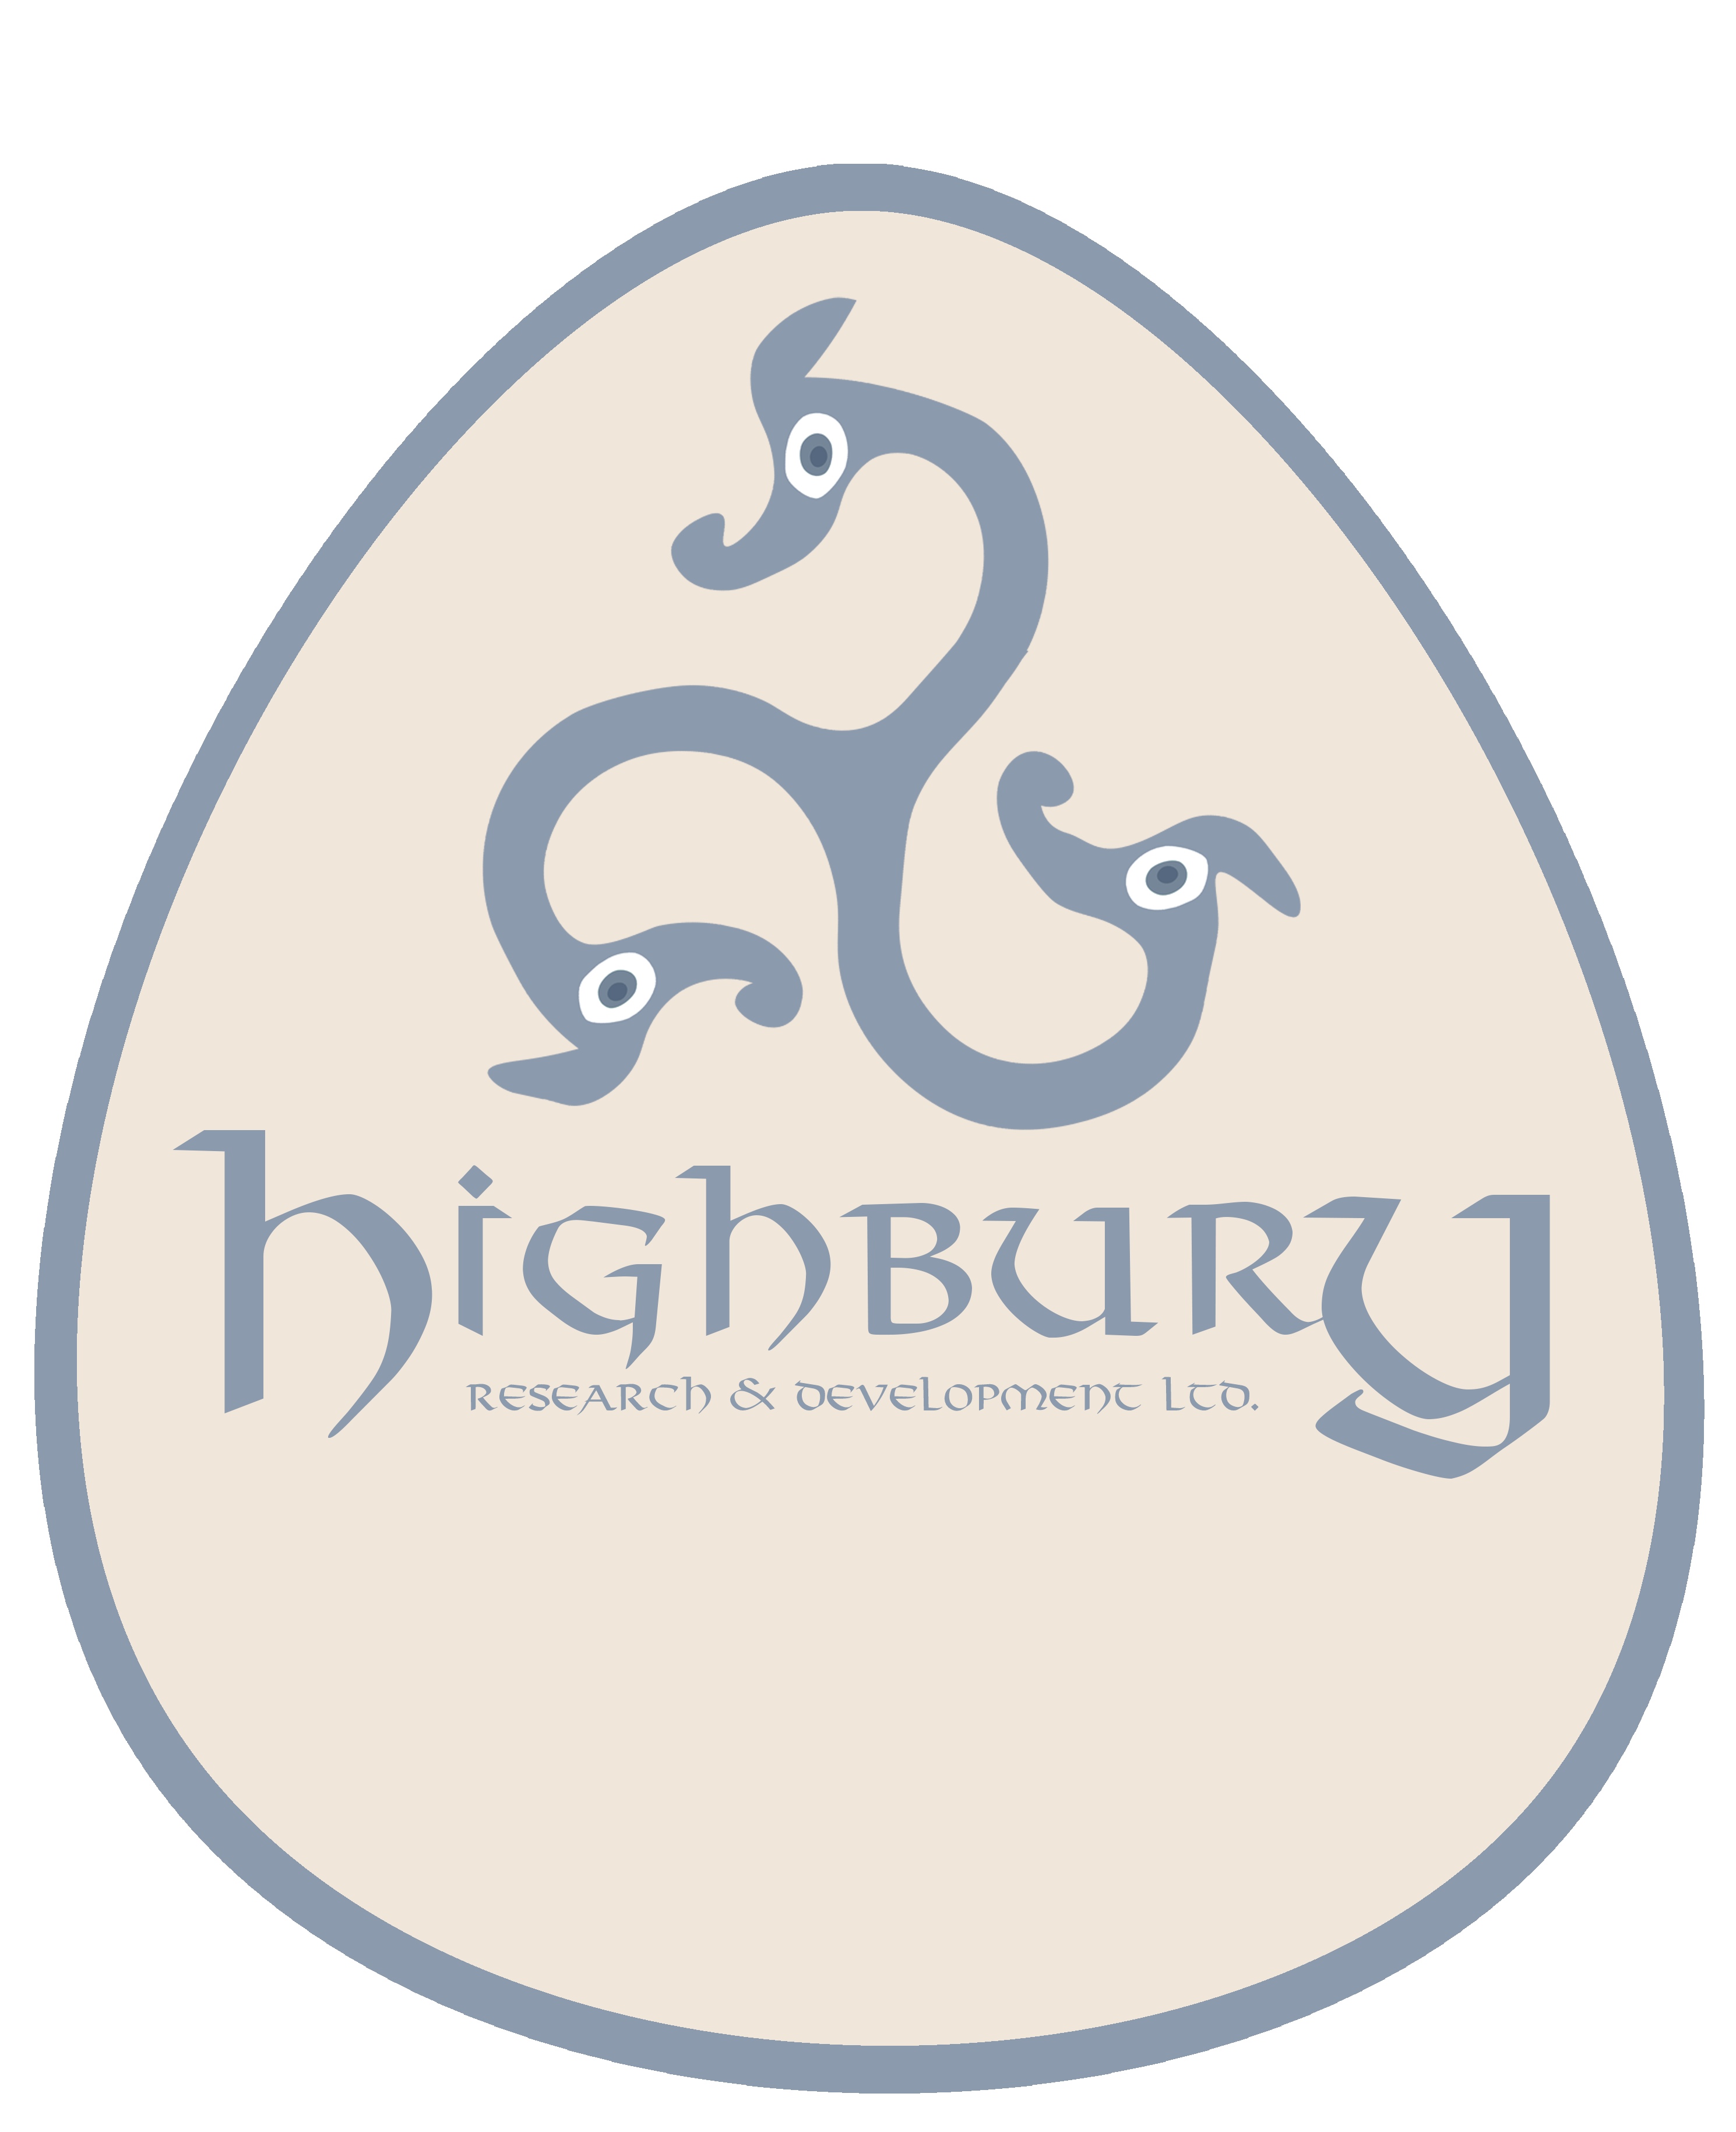 Highbury Associates IVS